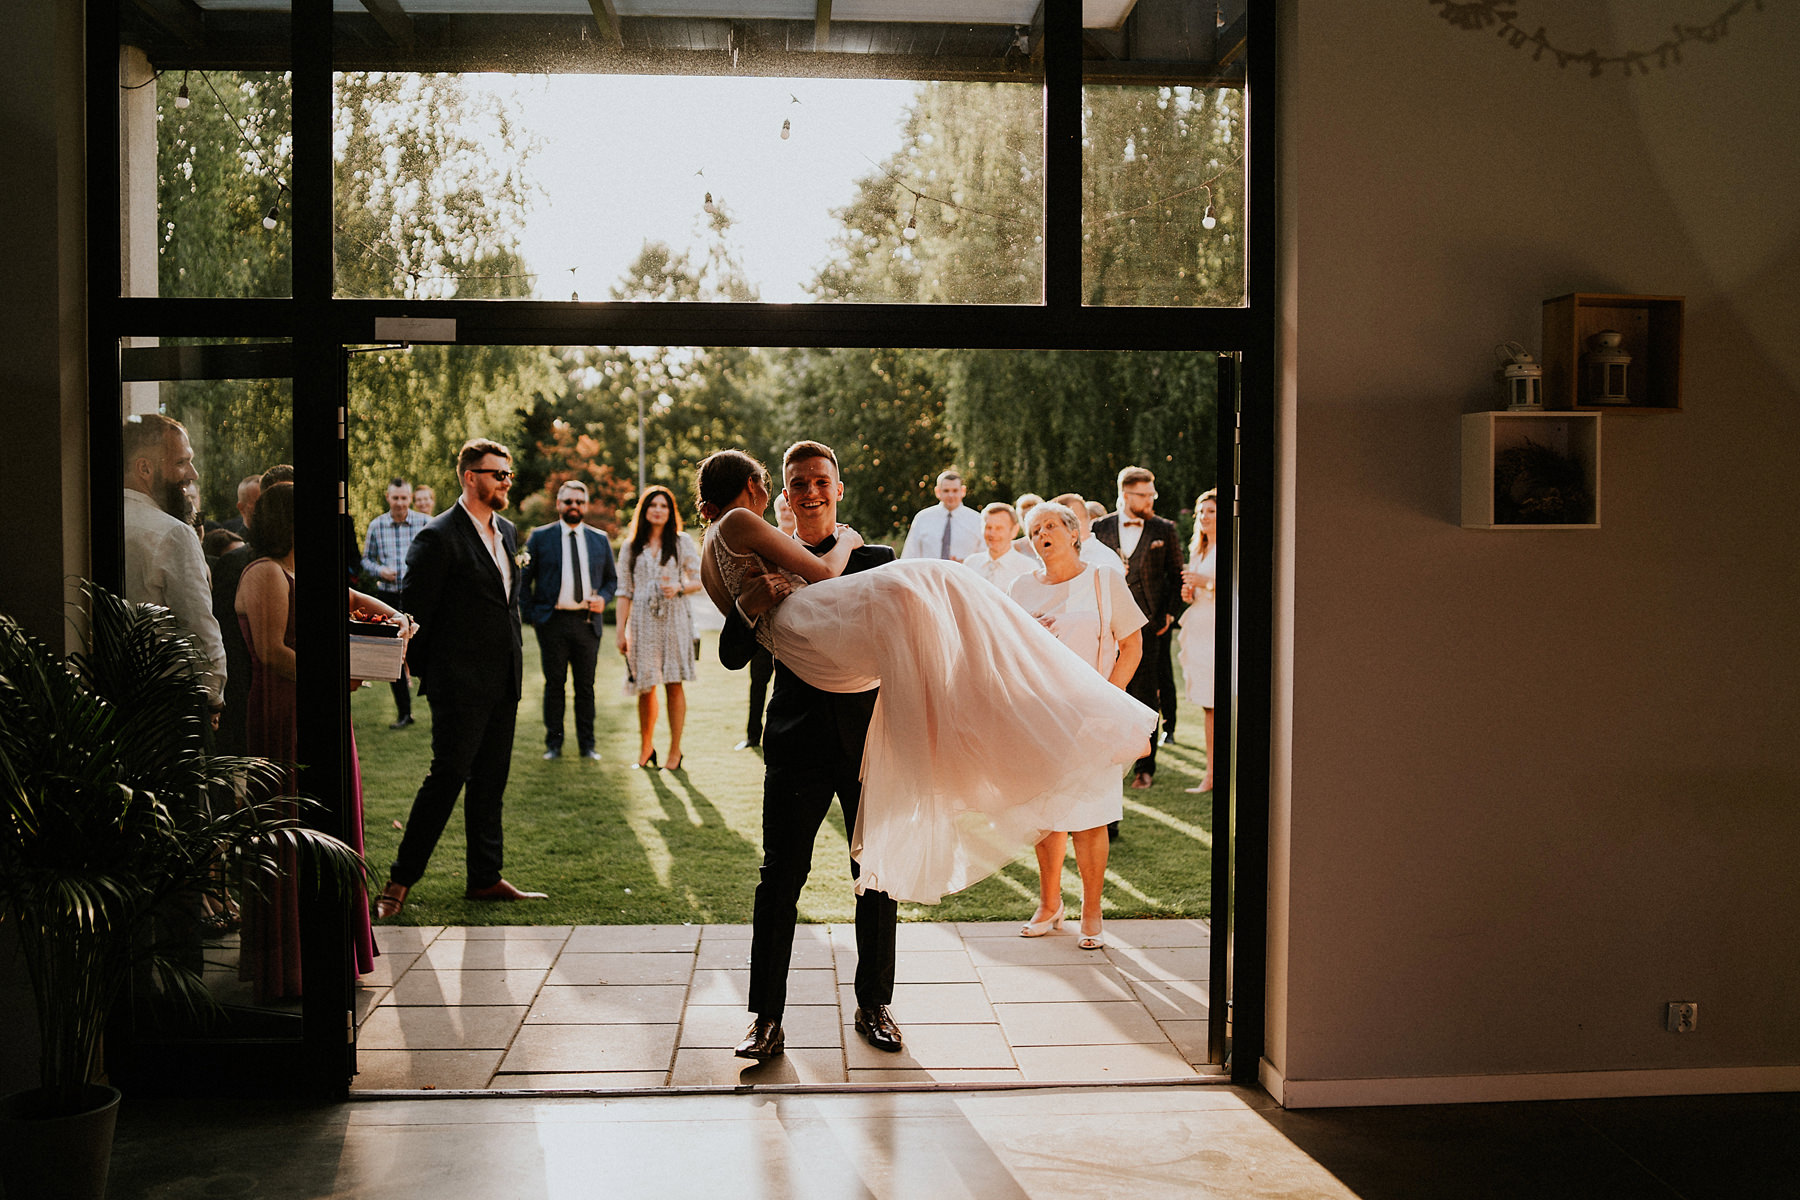 079 wesele villa omnia warszawa plenerowy slub wedding fotograf karol nycz photography krakow